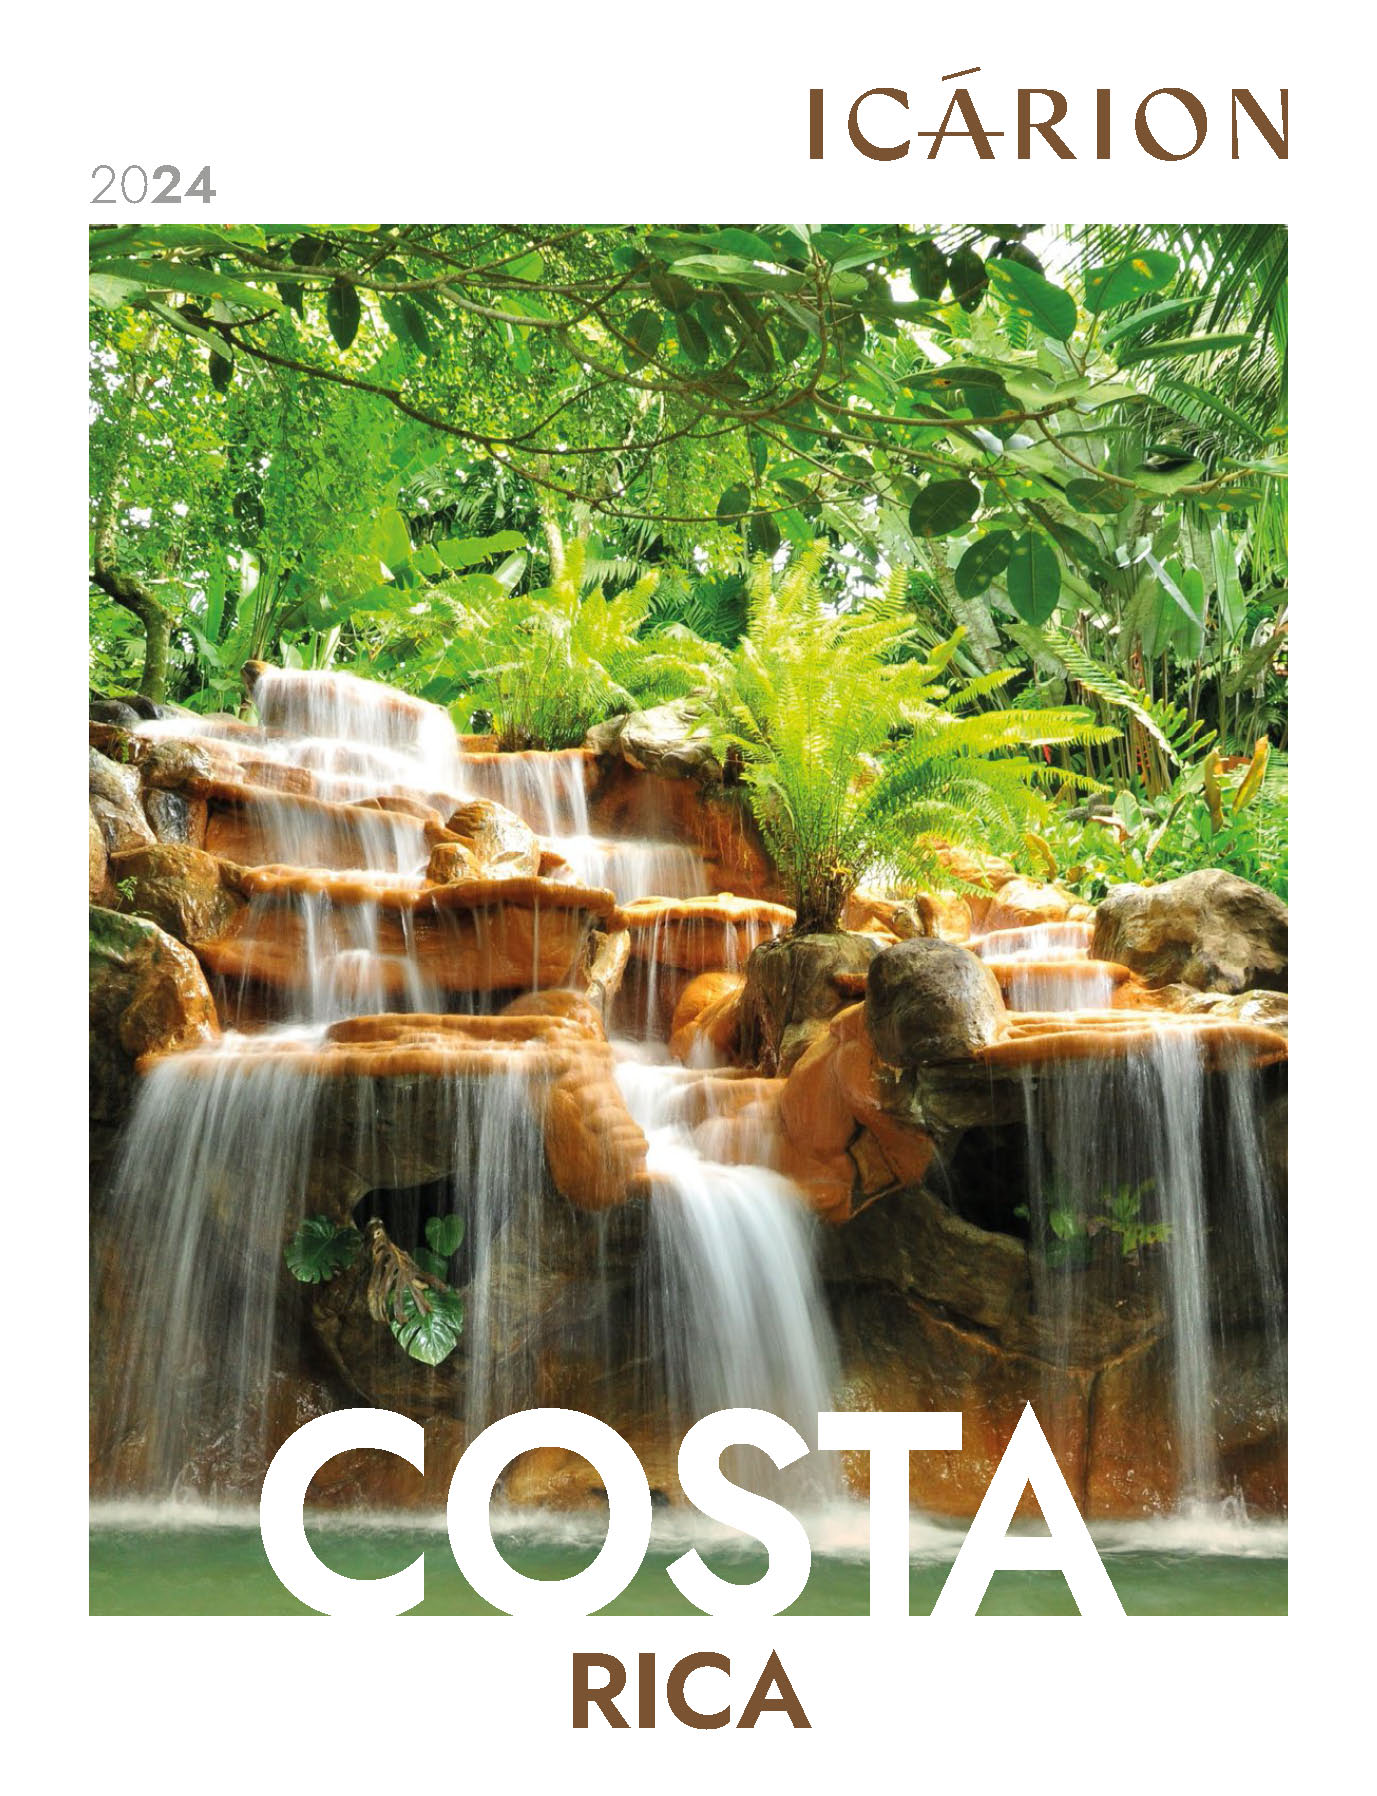 Catalogo Icarion Circuitos Costa Rica 2024